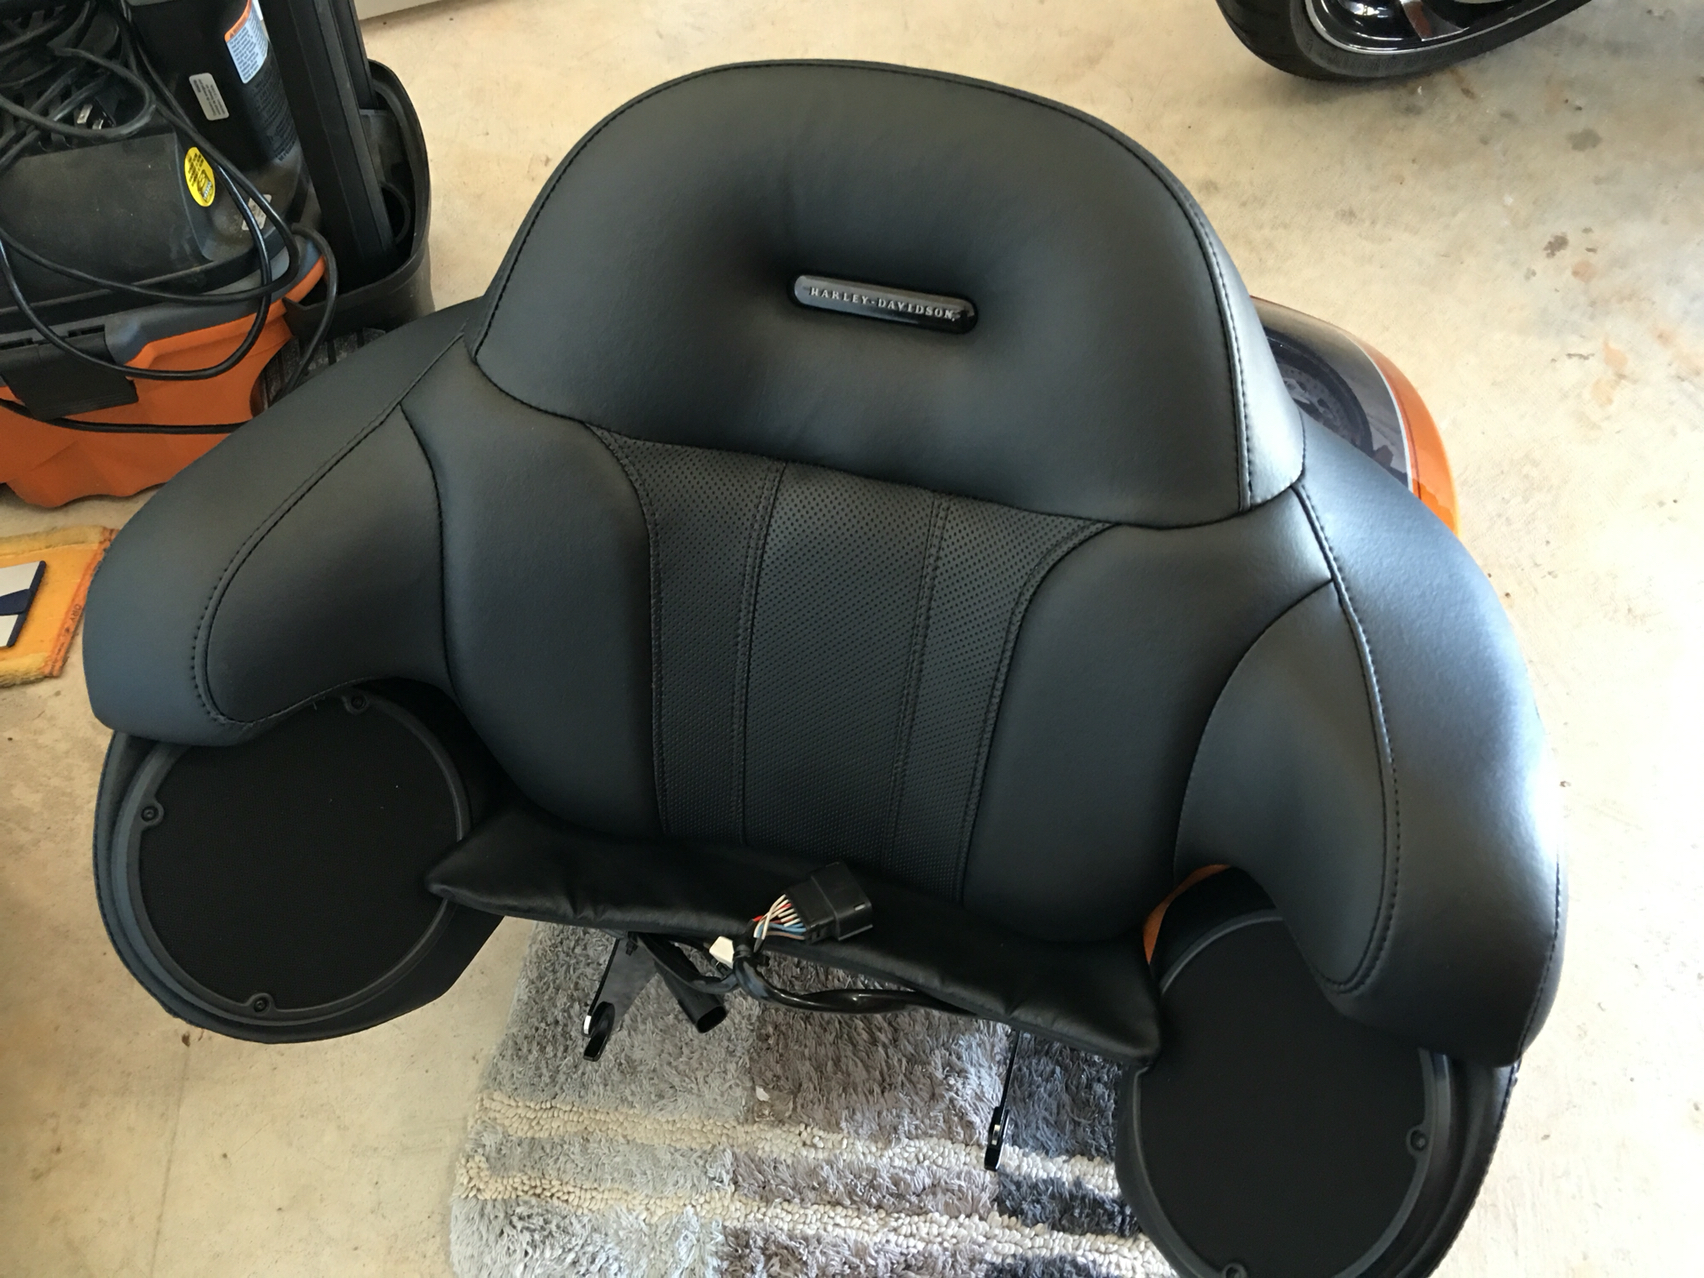 Heated CVO Seat, Backrest, and Tourpak Backrest - Harley Davidson Forums